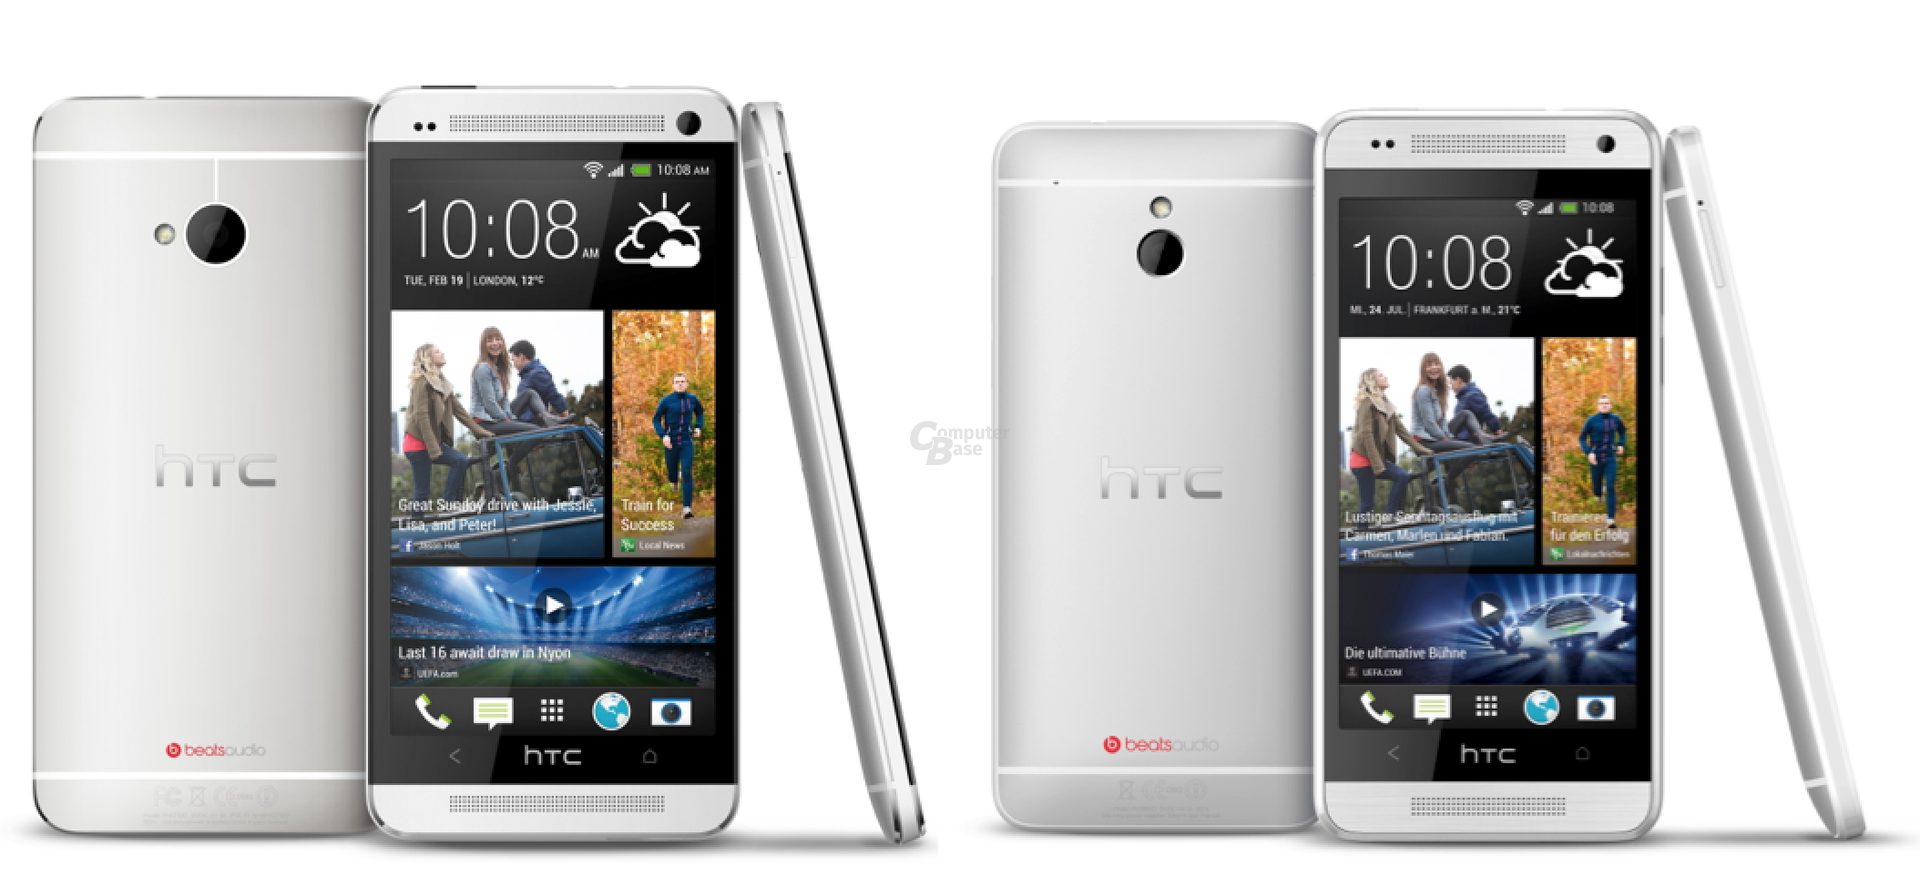 HTC One vs. HTC One mini